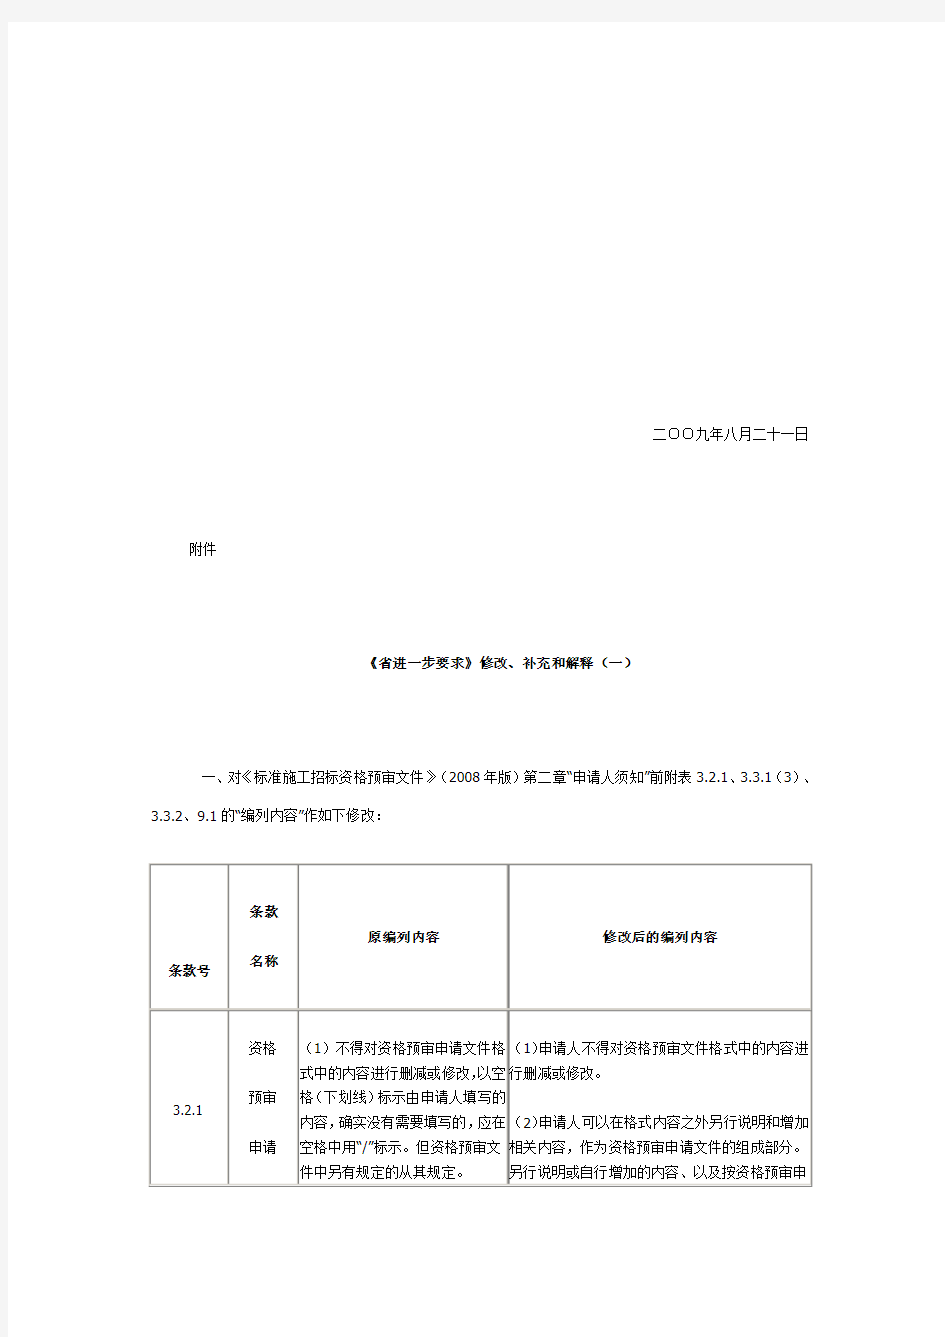 四川省发展和改革委员会关于印发《省进一步要求》修改、补充和解释(一)的通知